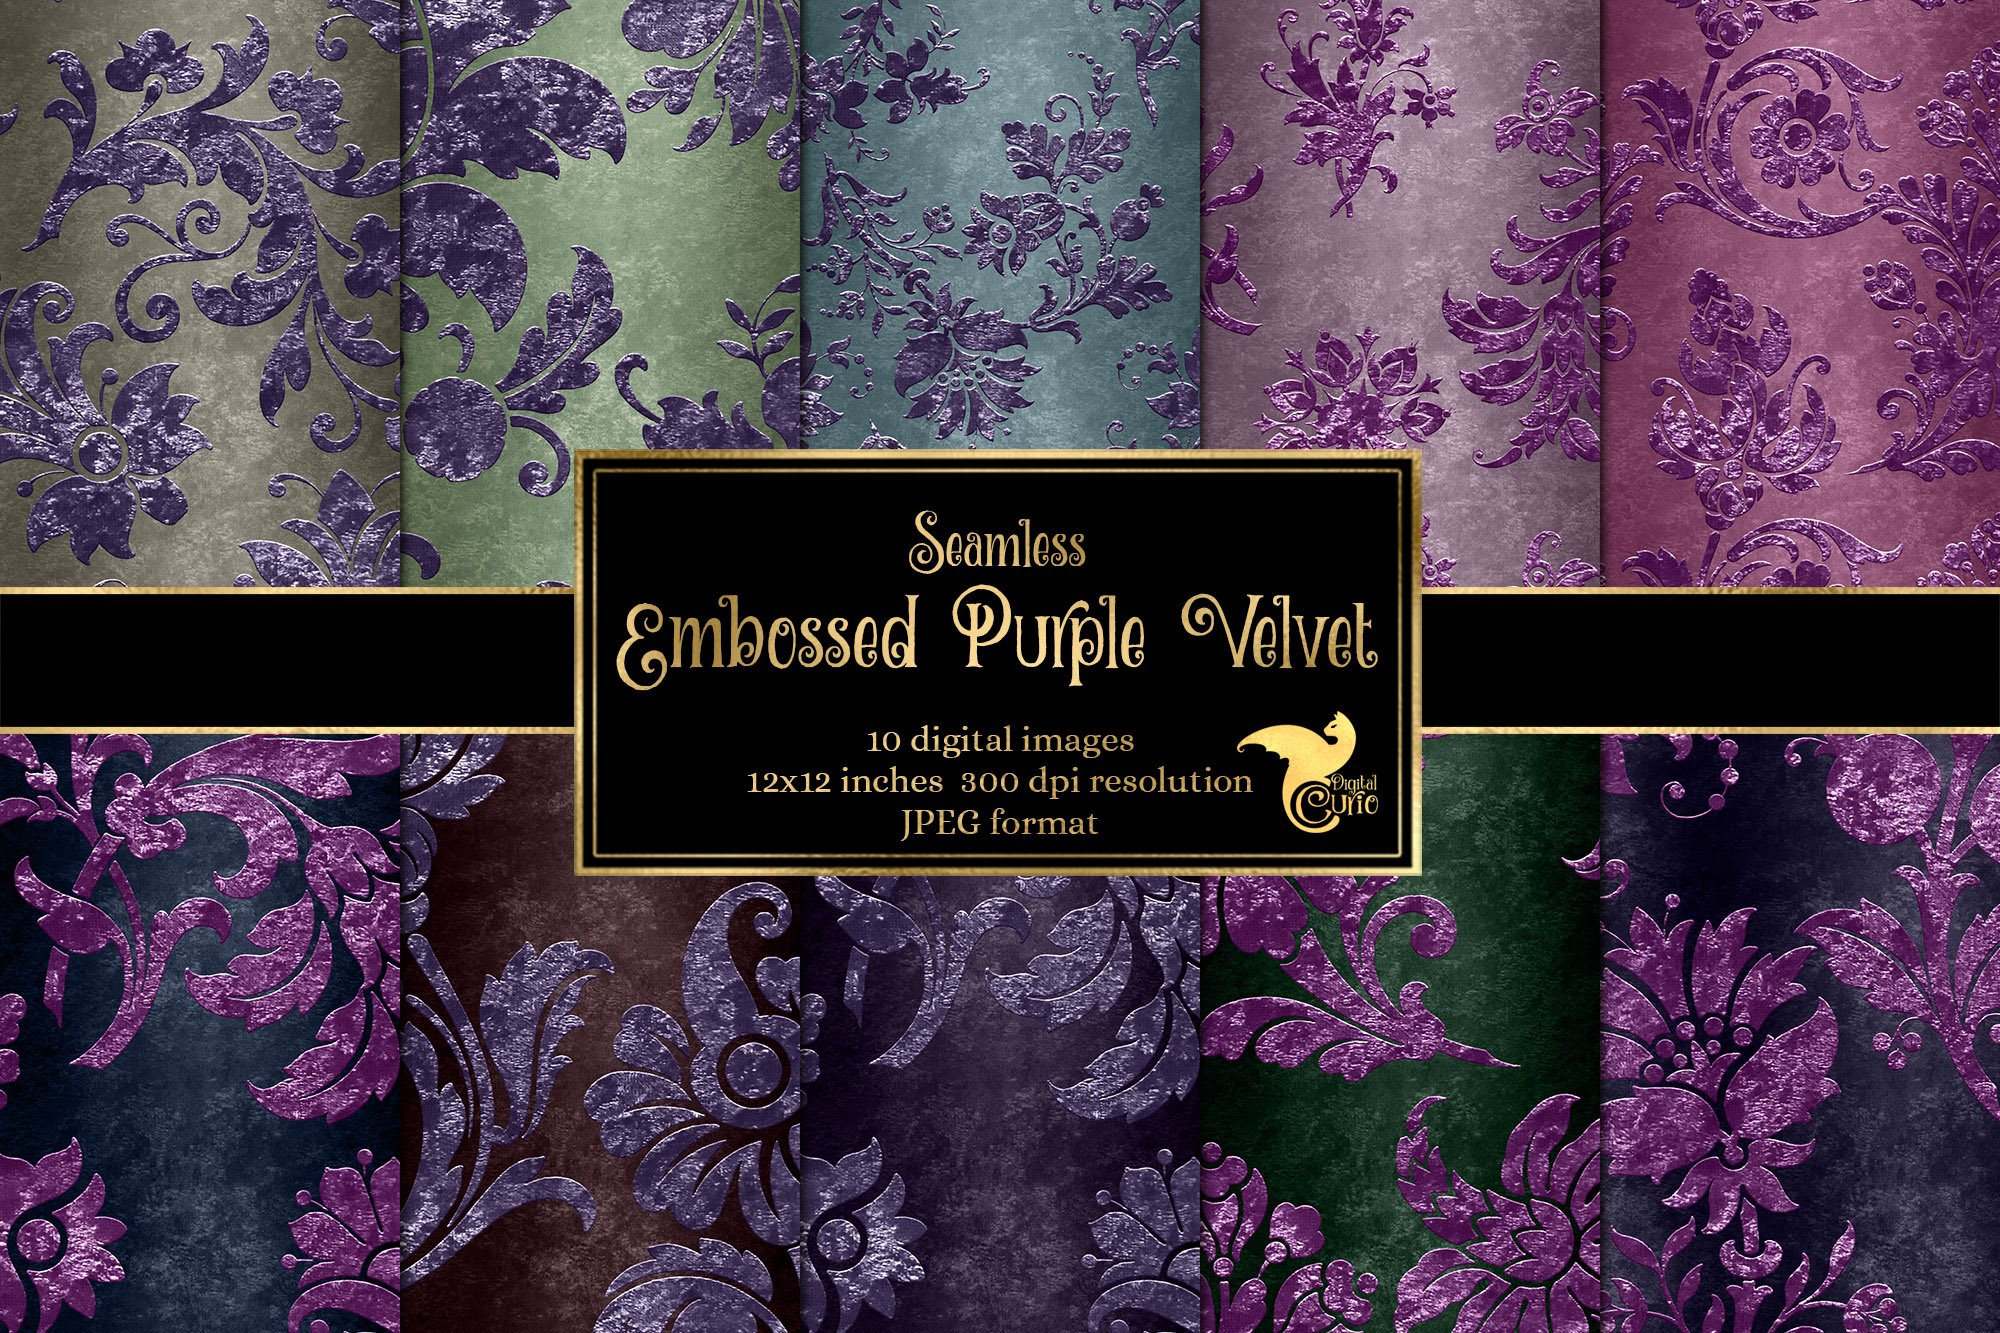 Embossed Purple Velvet Digital Paper cover image.